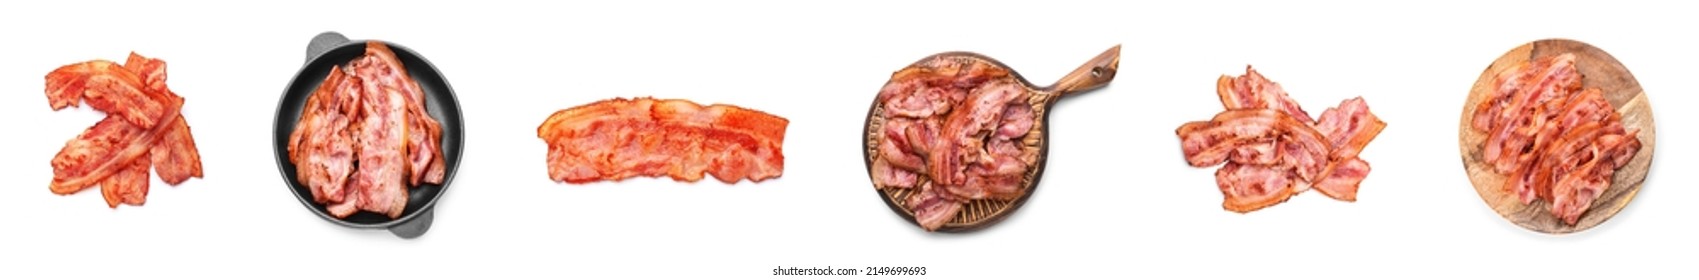 Set of fried bacon rashers on white background